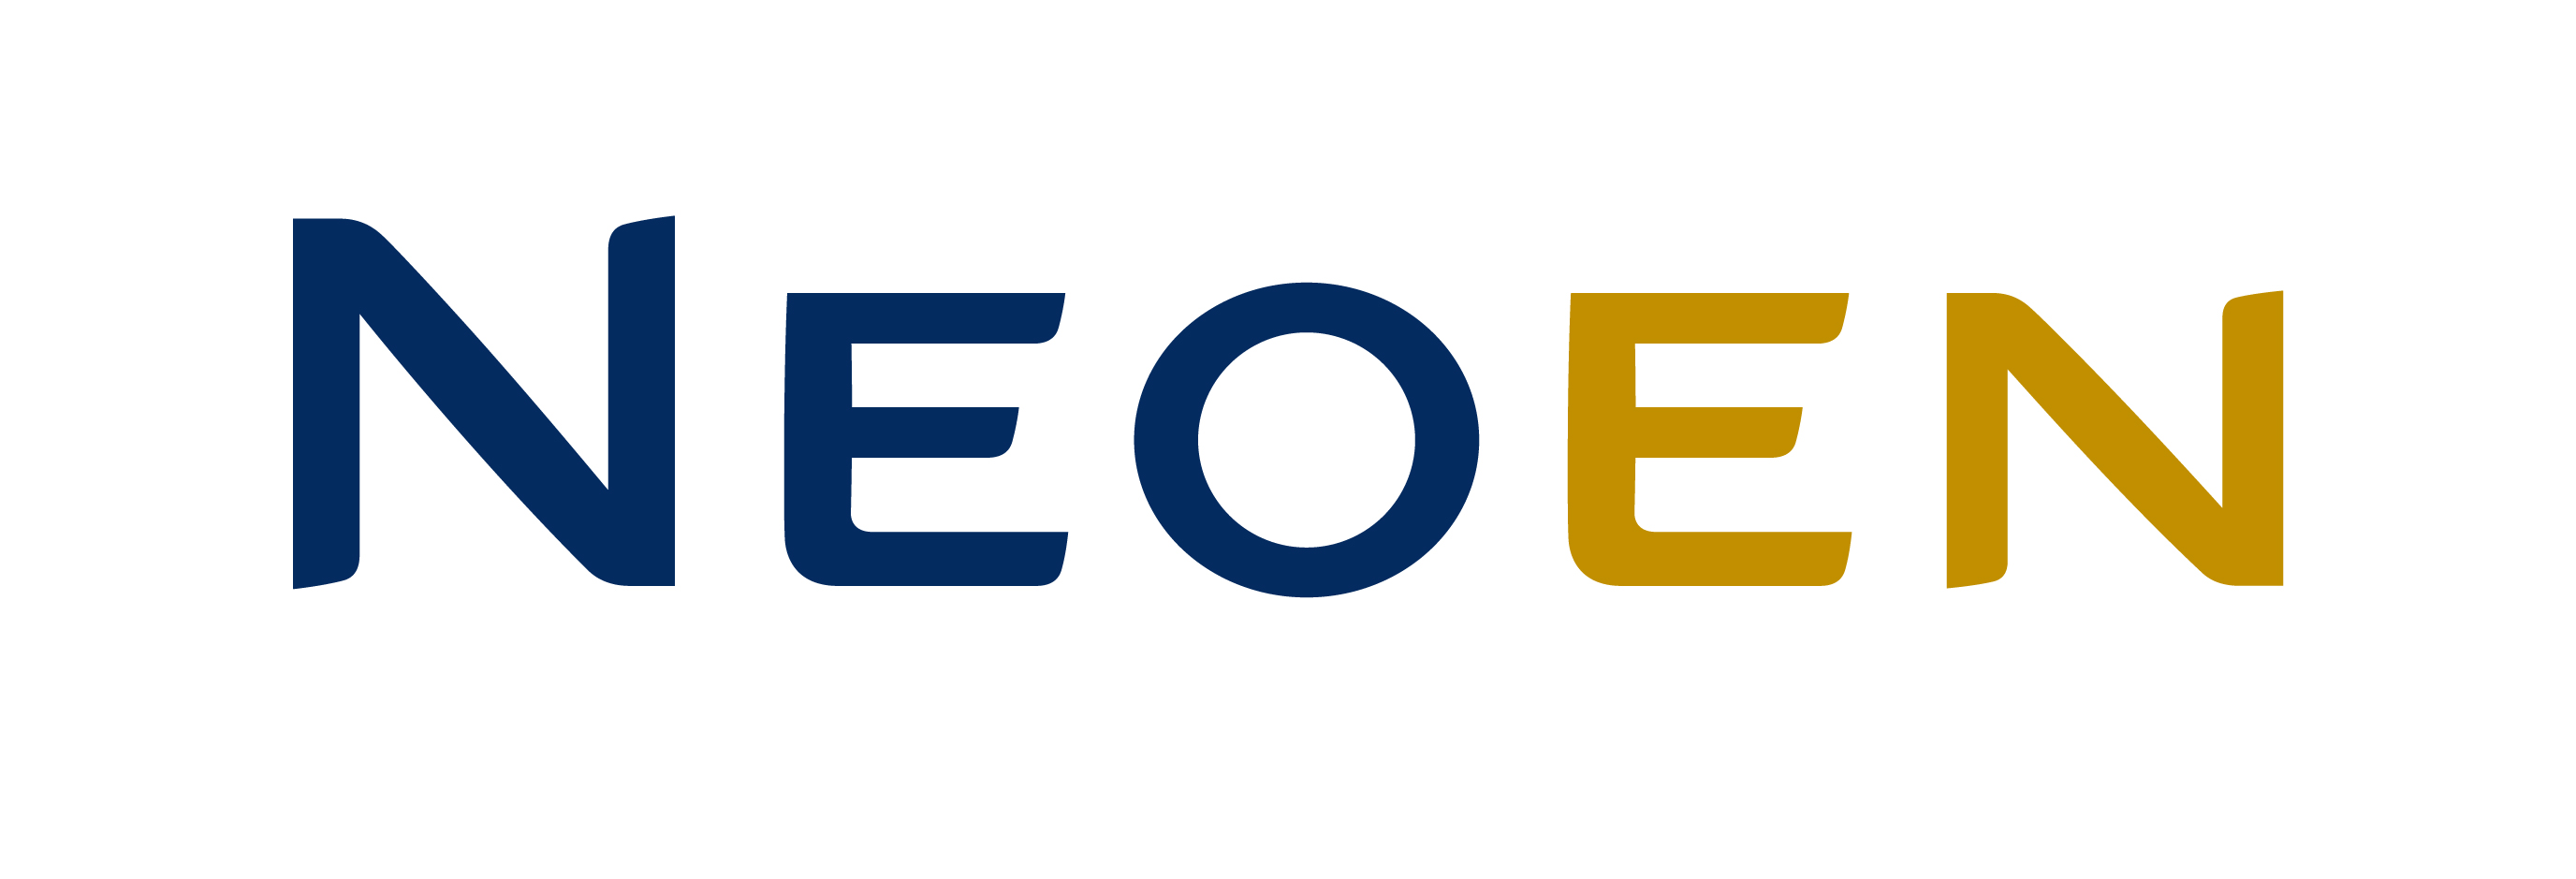 Logo de Neoen